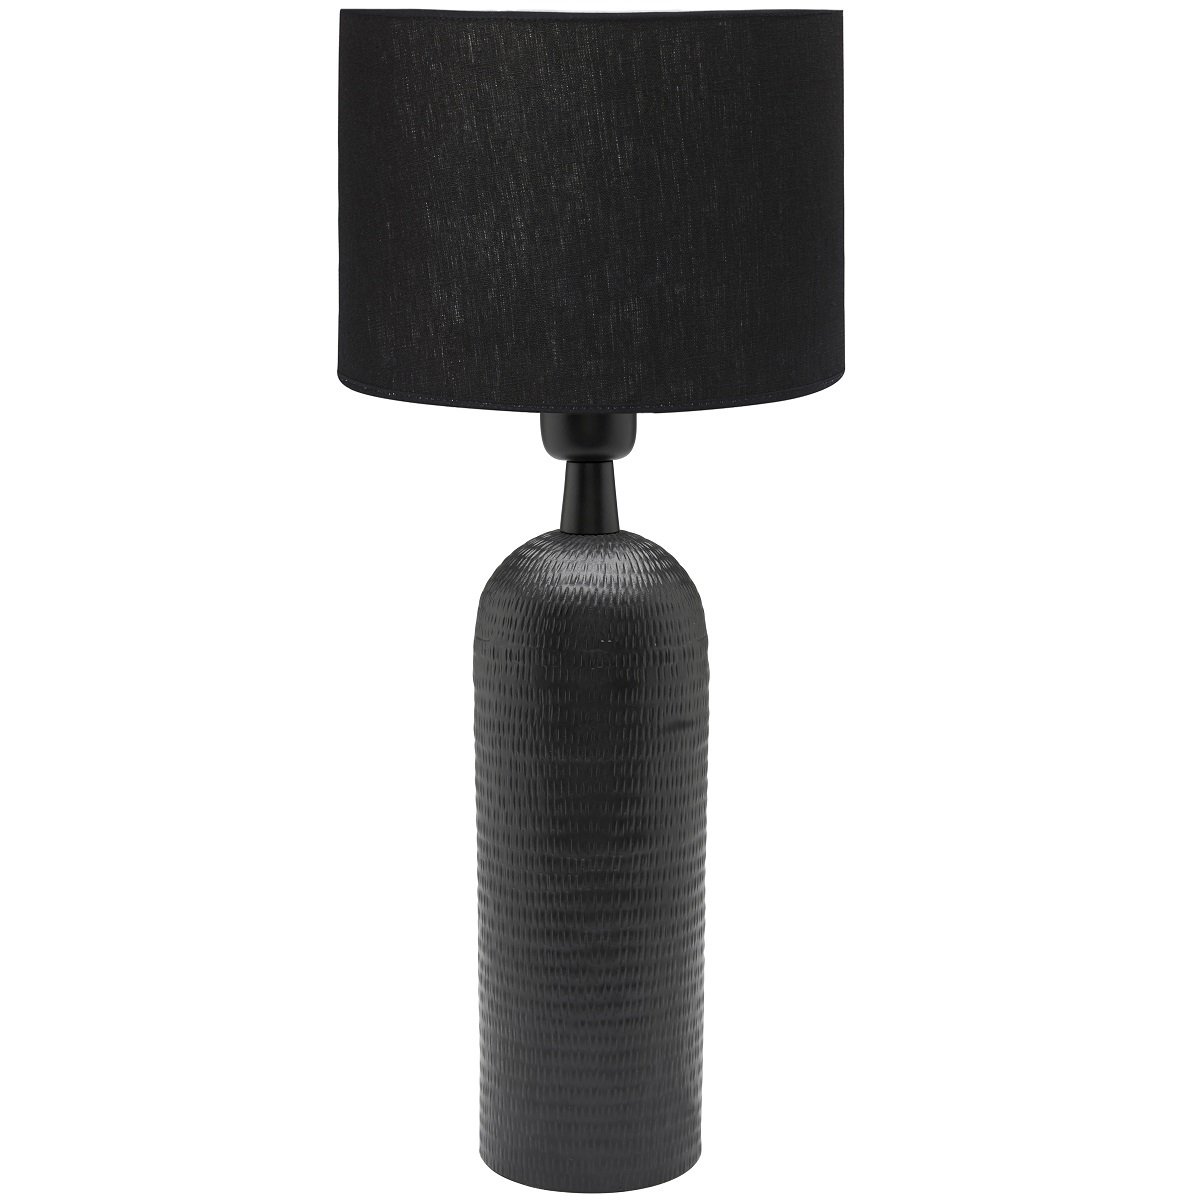 Lampe mit Metall-Lampenschirm, 3,5 V, 1 cm hoch